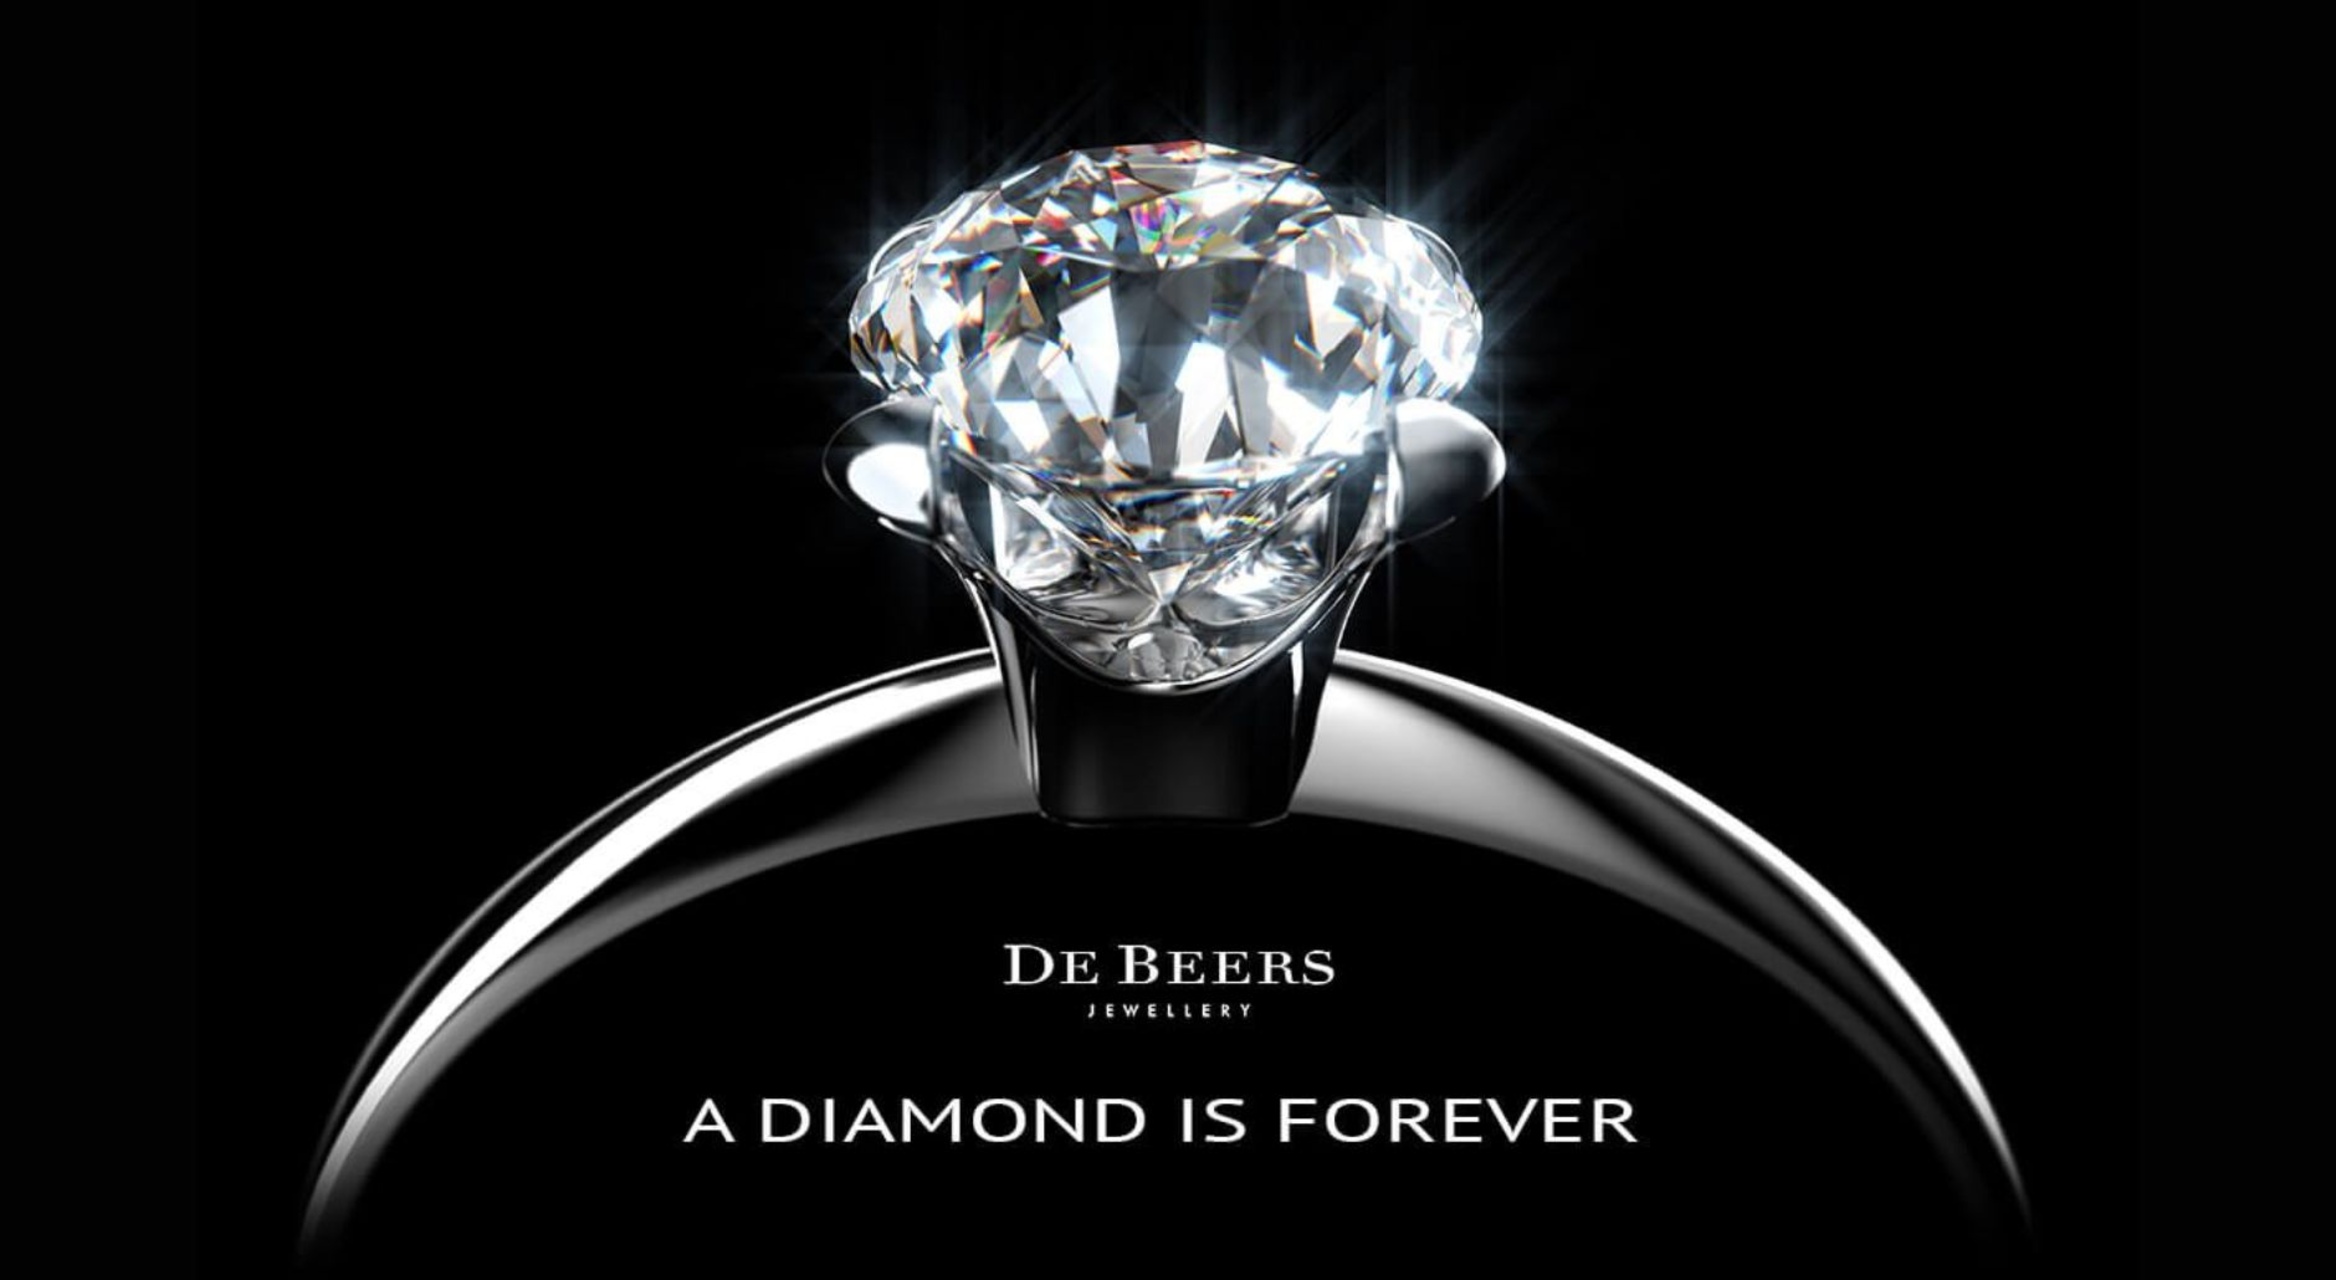 Relazioni Pubbliche: il claim "A Diamond is Forever" di De Beers è del 1947